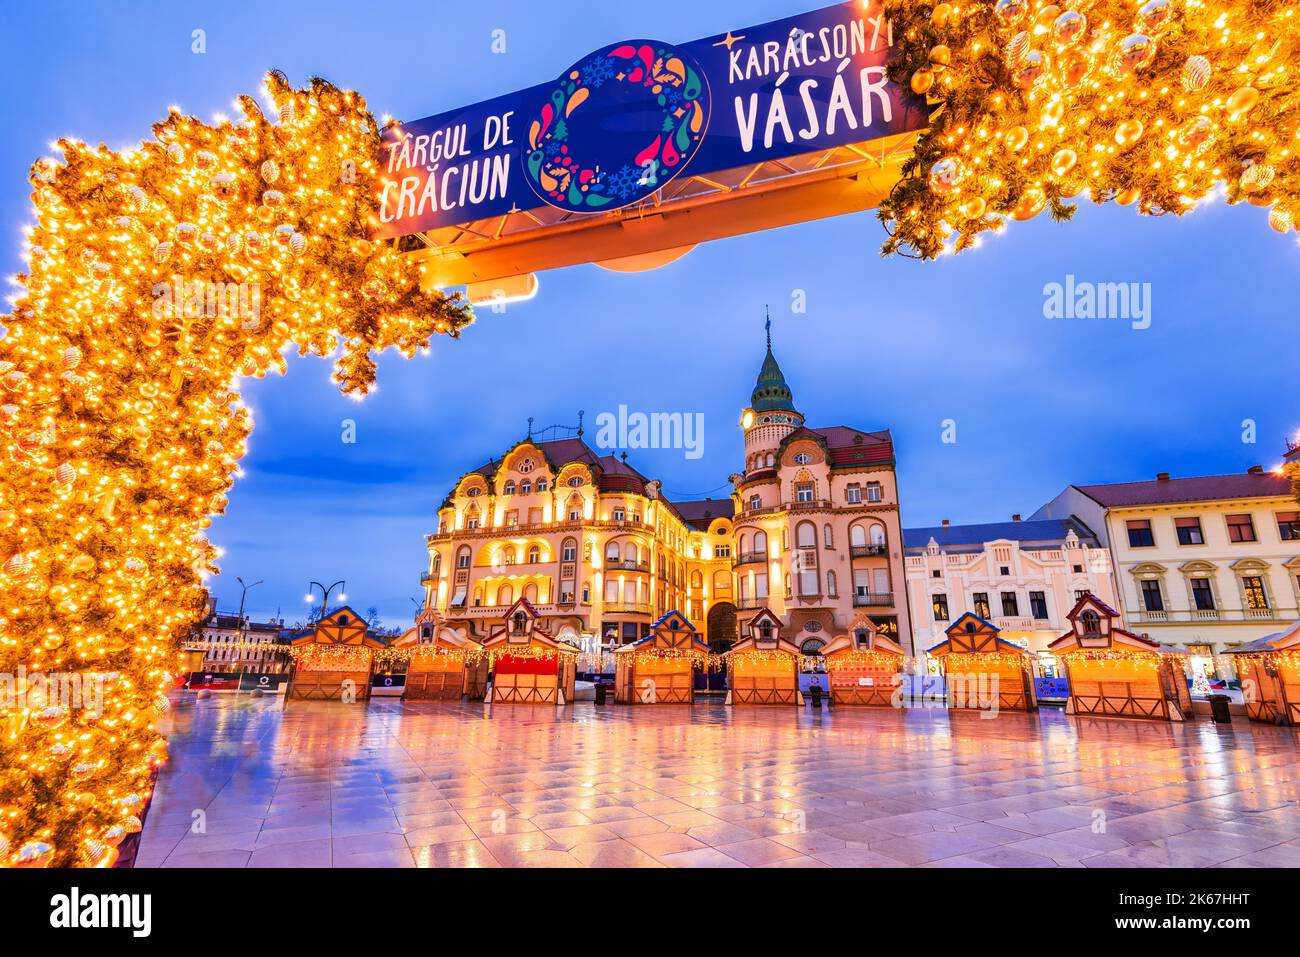 Oradea, Roumanie - décembre 2021. Marché de Noël et décorations dans la belle ville de Crisana - Transylvanie, Europe de l'est Banque D'Images